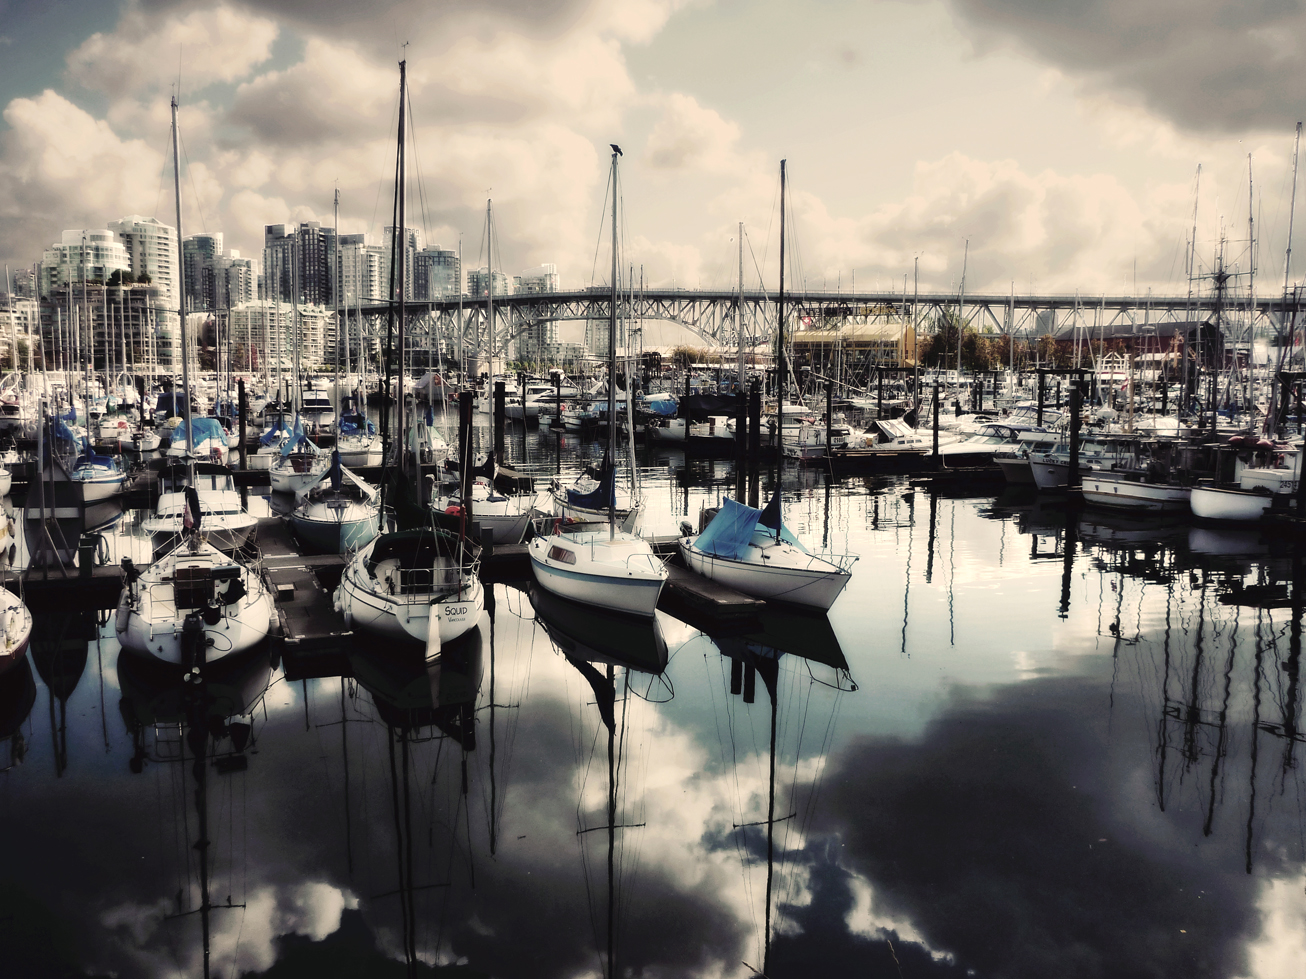 Taken in the area of Granville Island Market in Vancouver, BC. Flickr - Krystian Olszanski.